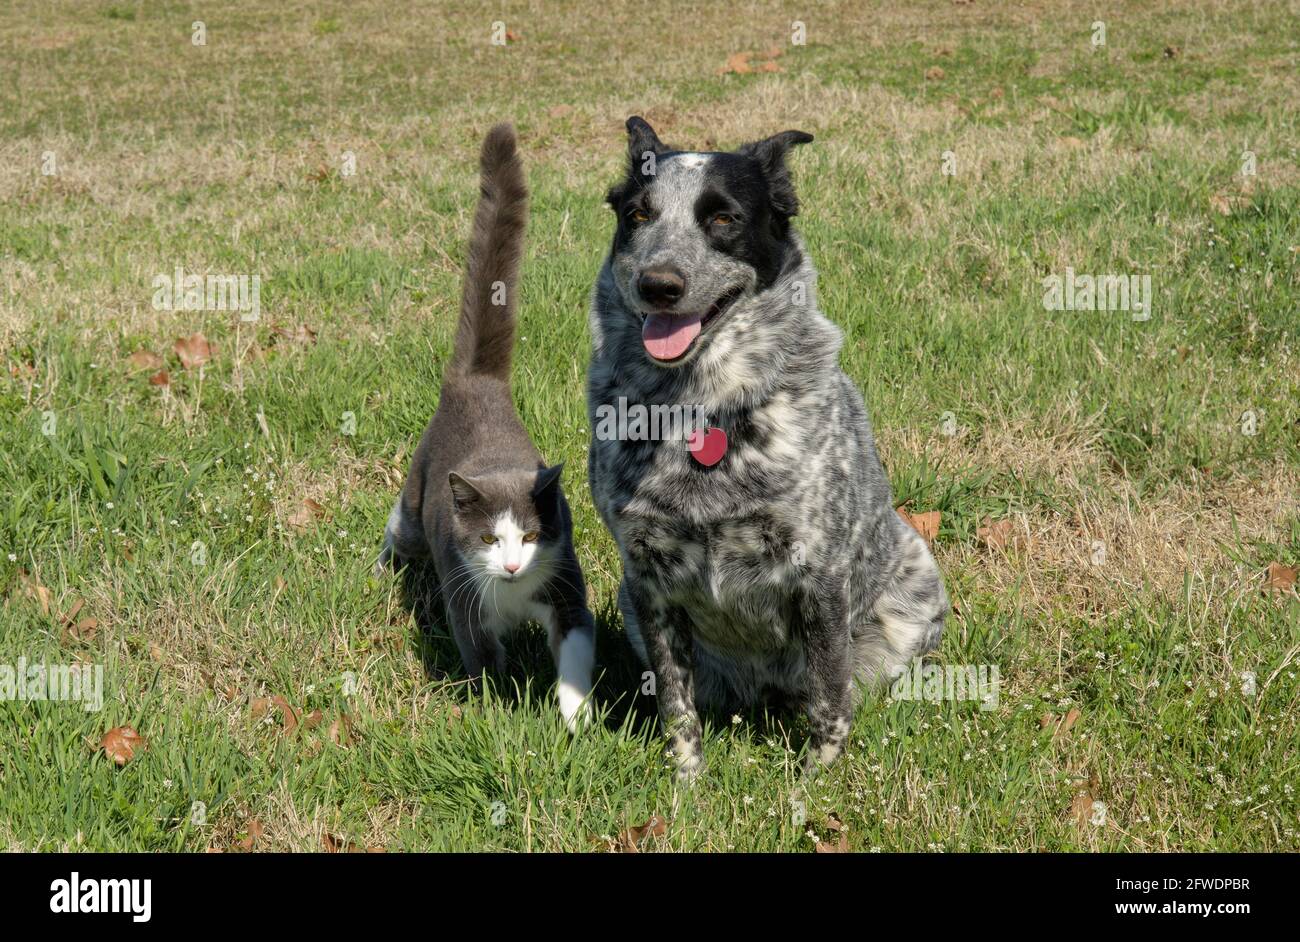 Cane macchiato bianco e nero seduto in erba, con un gatto grigio e bianco che cammina con sicurezza verso di lei Foto Stock